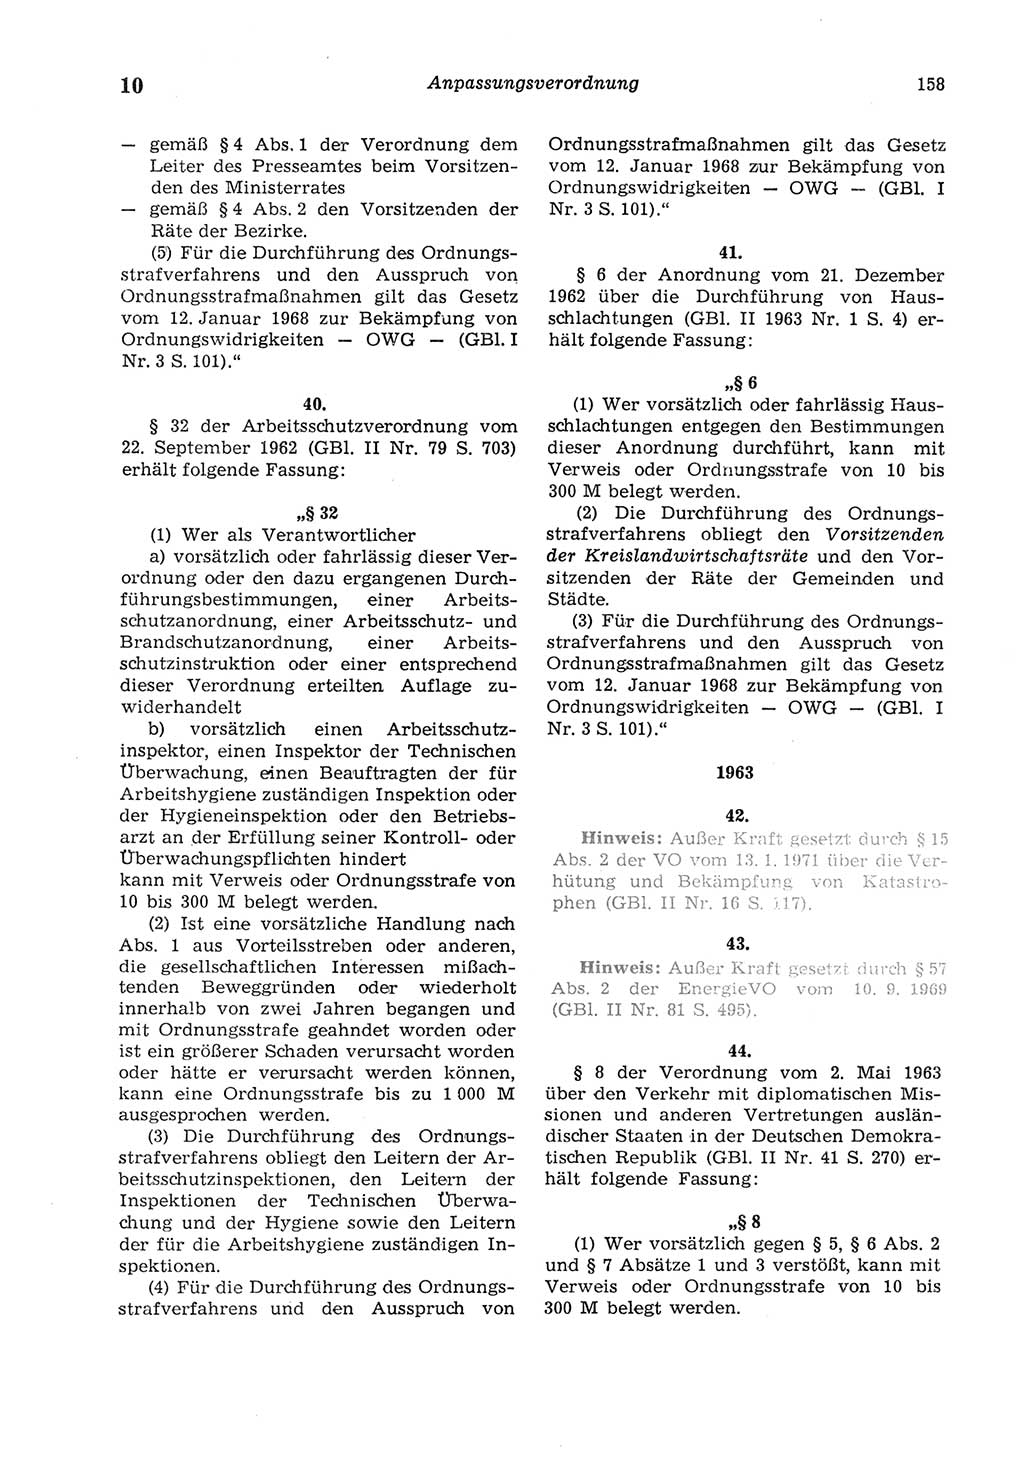 Strafgesetzbuch (StGB) der Deutschen Demokratischen Republik (DDR) und angrenzende Gesetze und Bestimmungen 1975, Seite 158 (StGB DDR Ges. Best. 1975, S. 158)